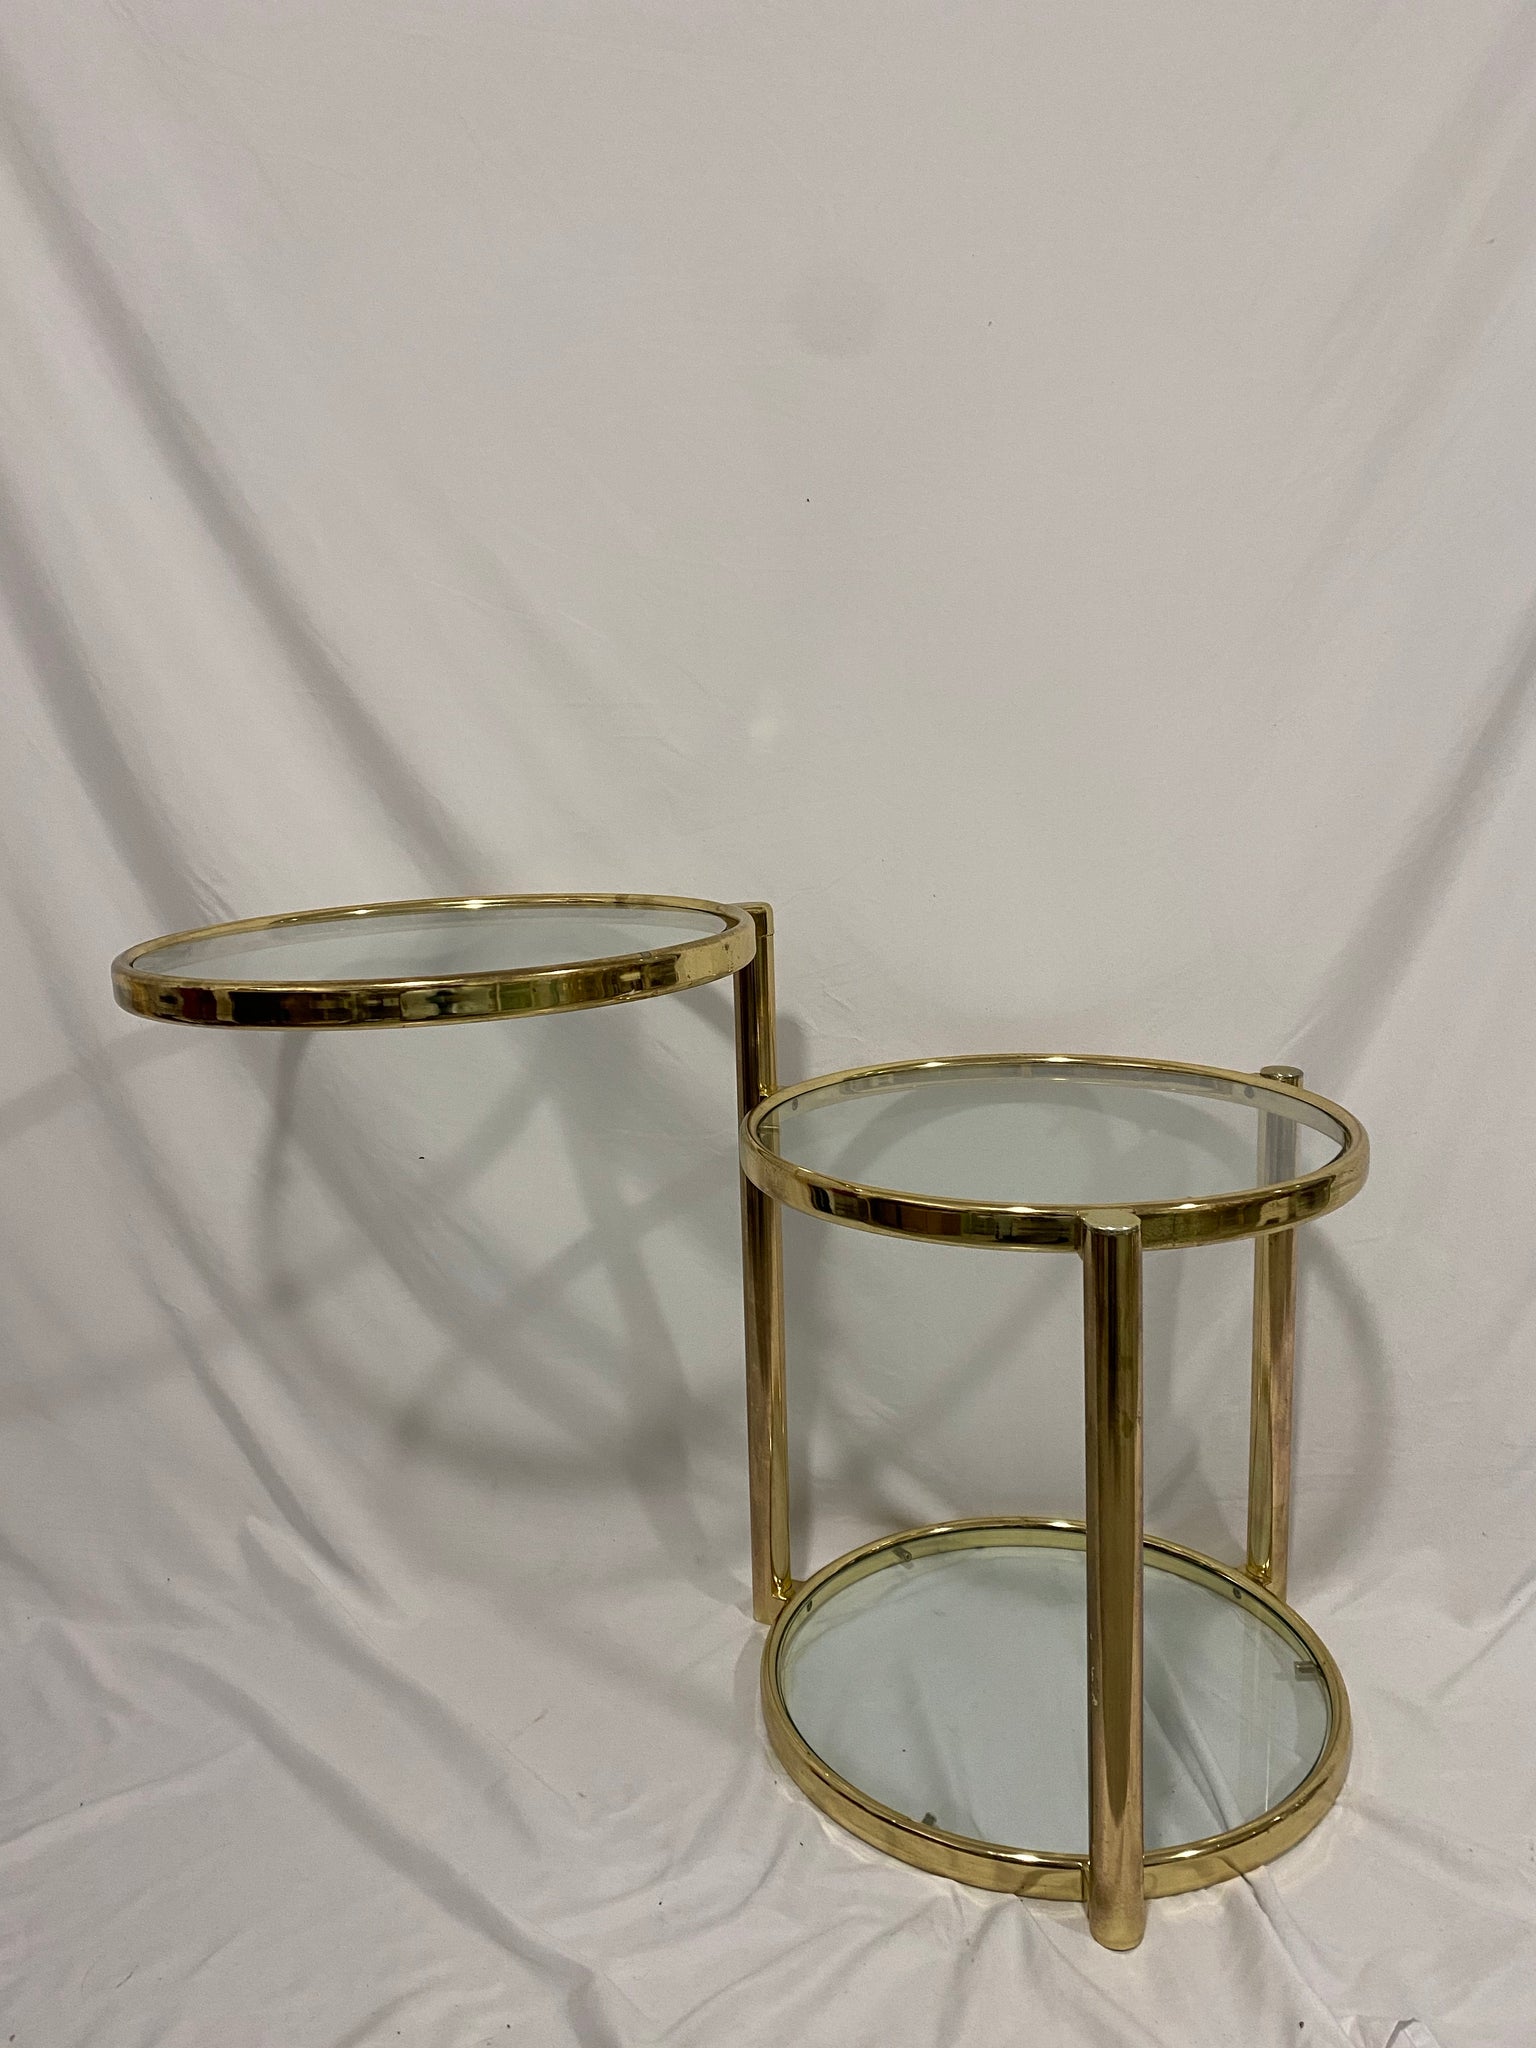 Golden brass & glass swivel table